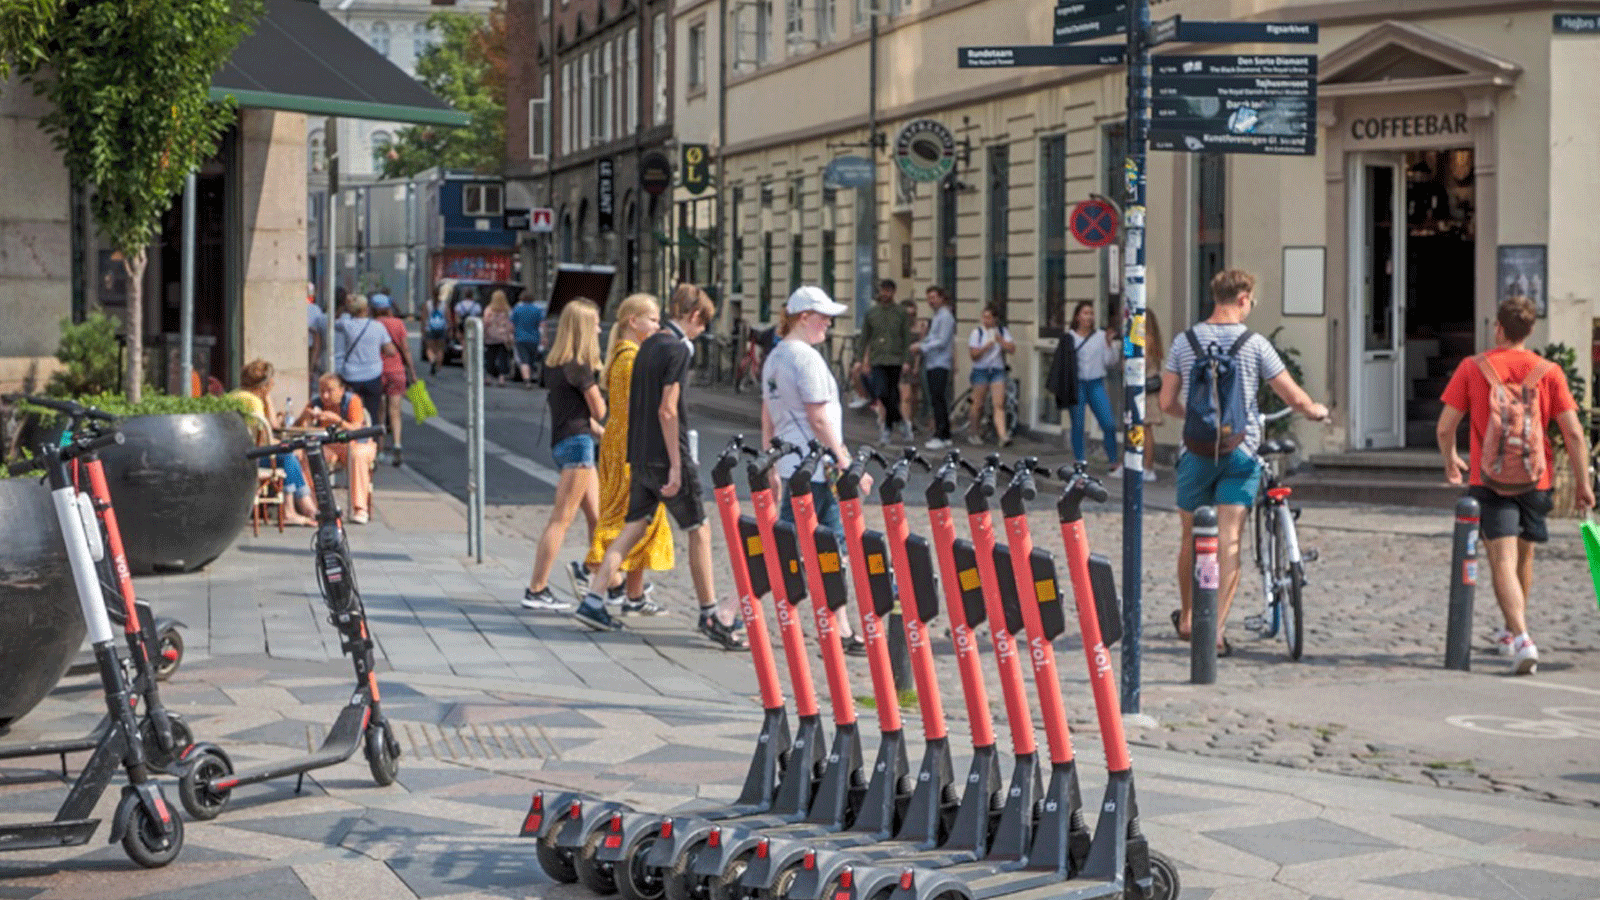 شروطٌ صارمة في مدينة كوبنهاغن لاستخدام السكوتر الكهربائي